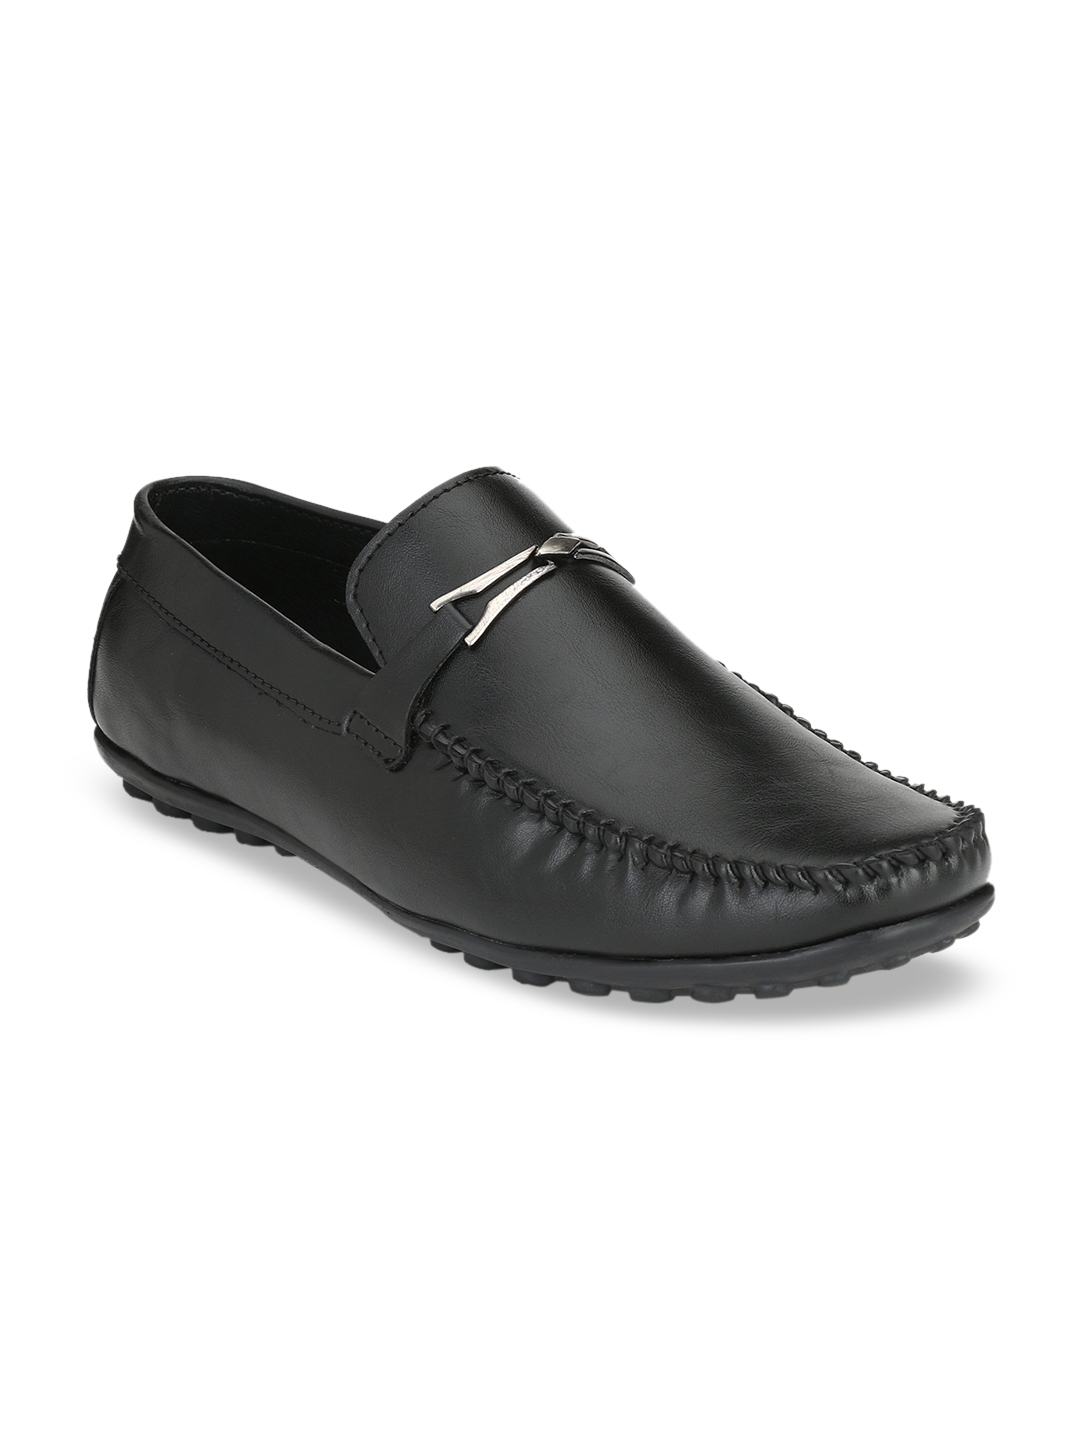 Buy El Paso Men Black Loafers - Casual Shoes for Men 11003136 | Myntra